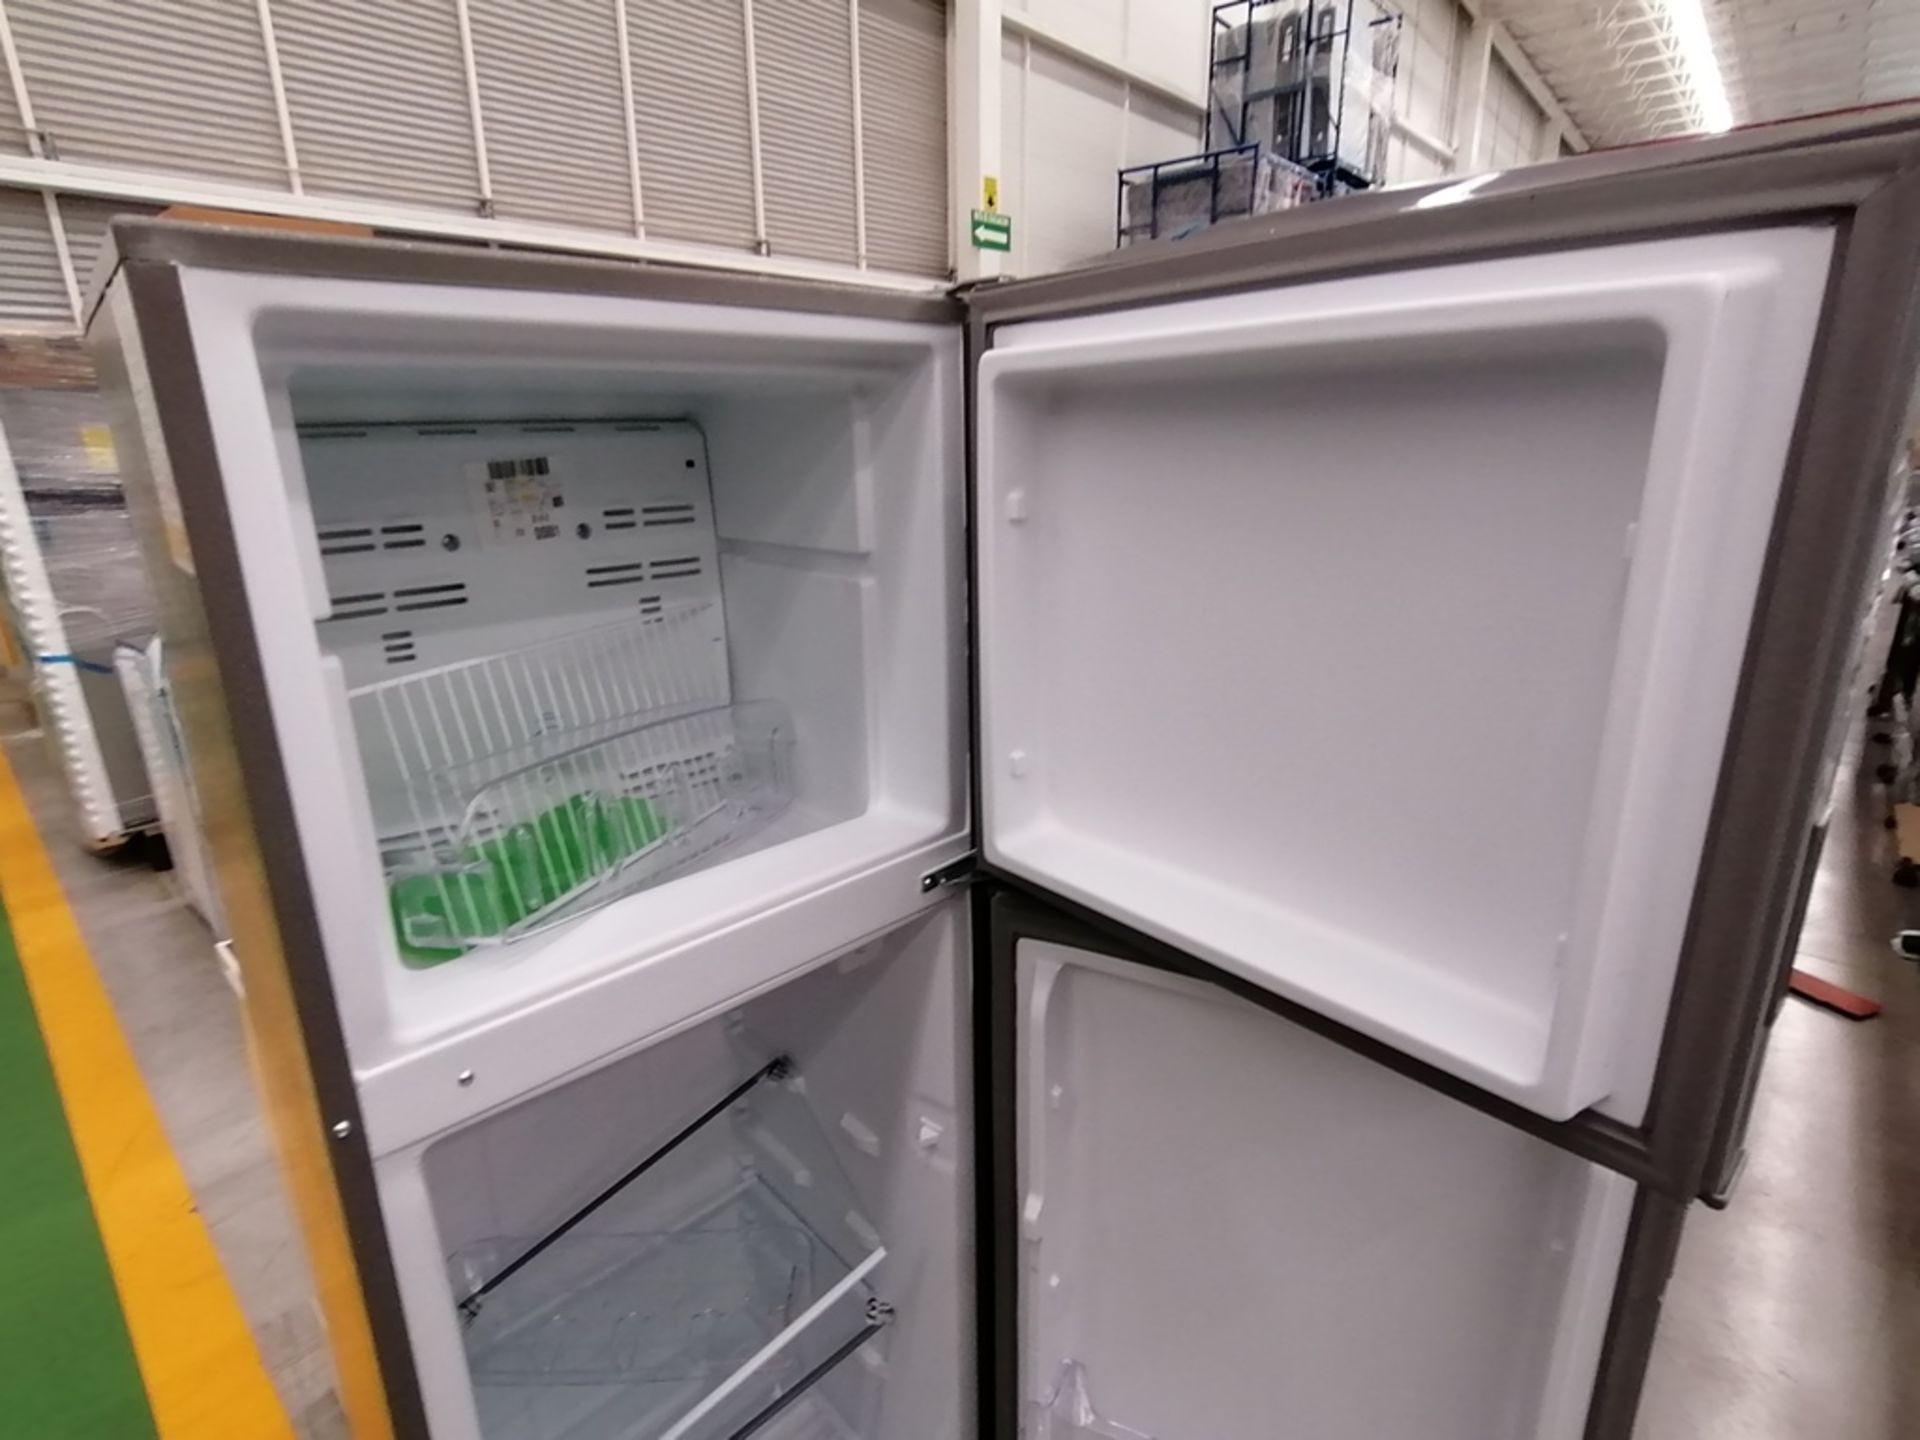 Lote de 2 refrigeradores incluye: 1 Refrigerador, Marca Acros, Modelo AT9007G, Serie VRA4332547, Co - Image 10 of 14